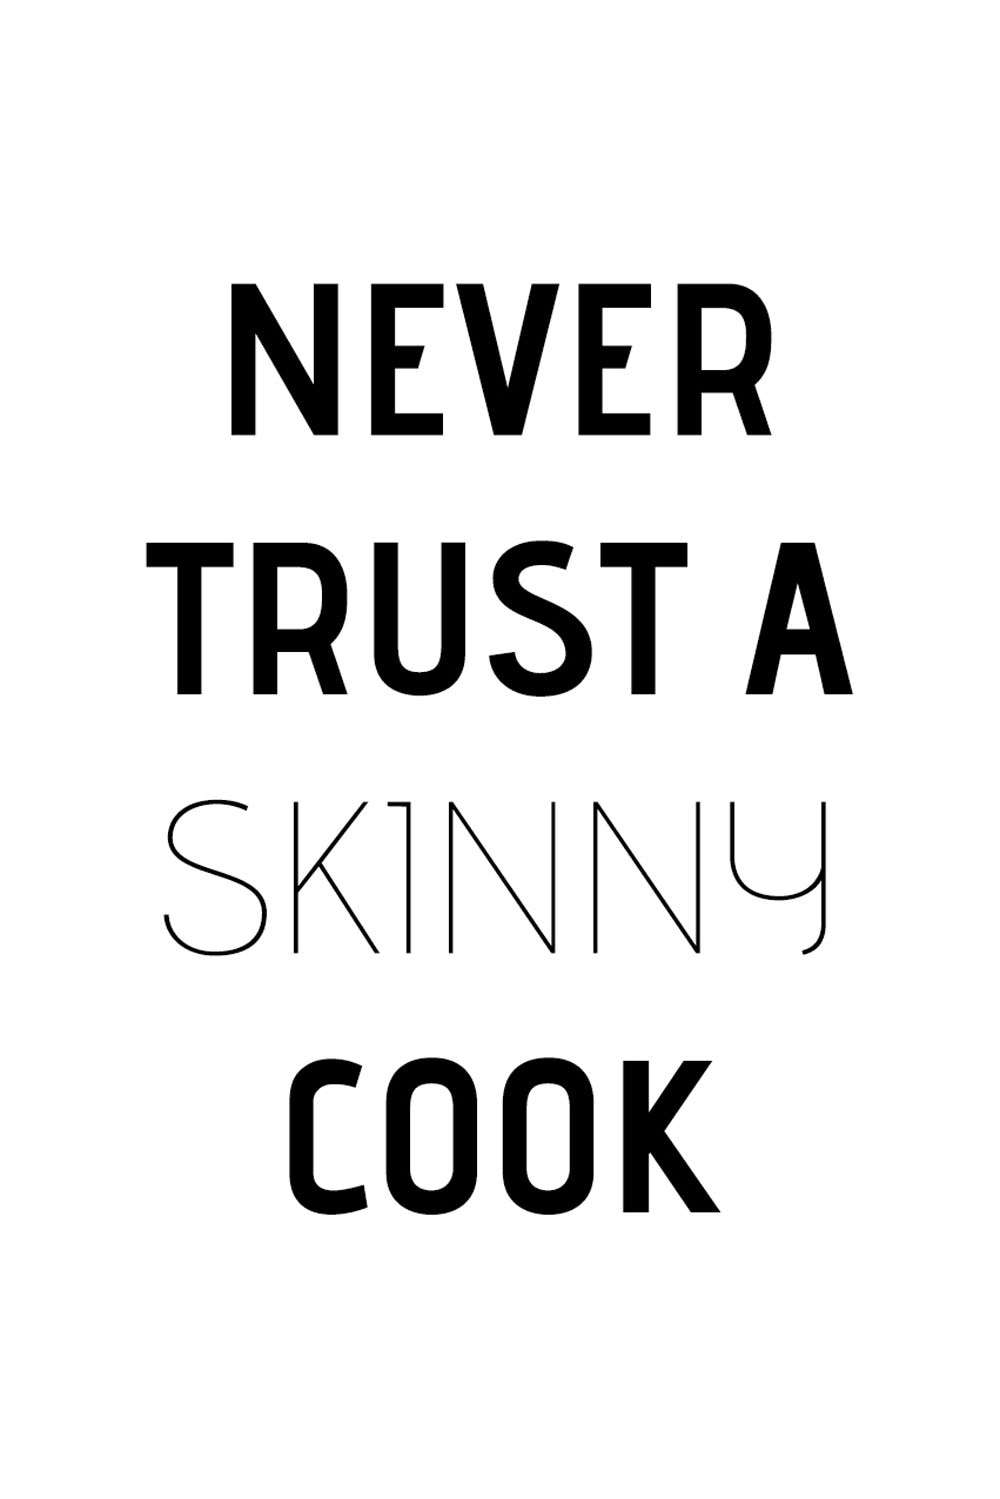 skinny OTTO a »Never cook«, bei Stahlblech Wanddekoobjekt Schriftzug kaufen queence auf trust